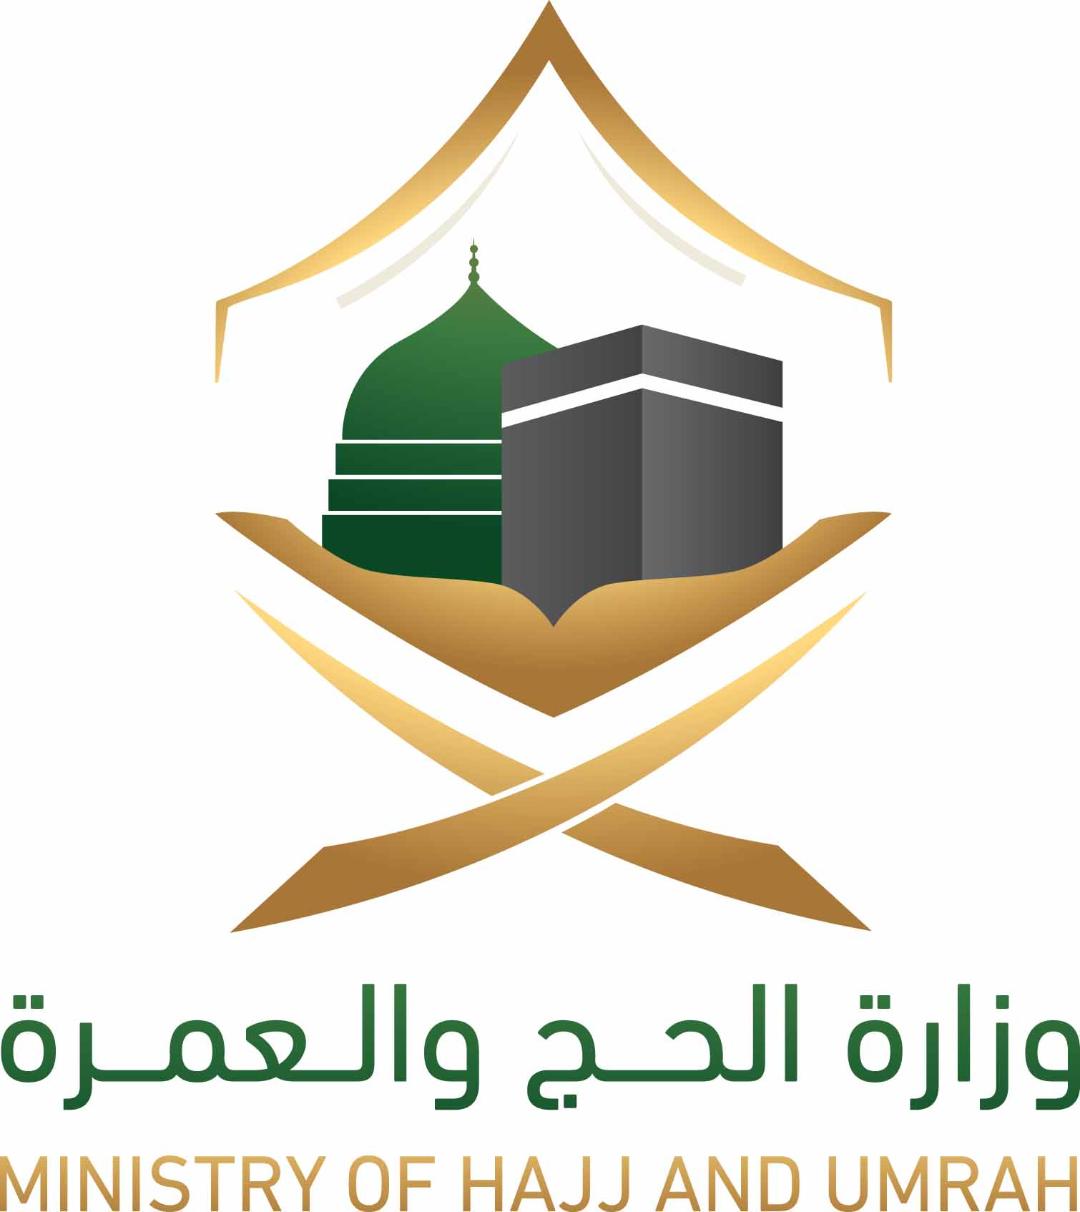   وزارة الحج والعمرة السعودية تعقد للمرة الأولى ندوة الحج الكبرى افتراضيًا في دورتها 45